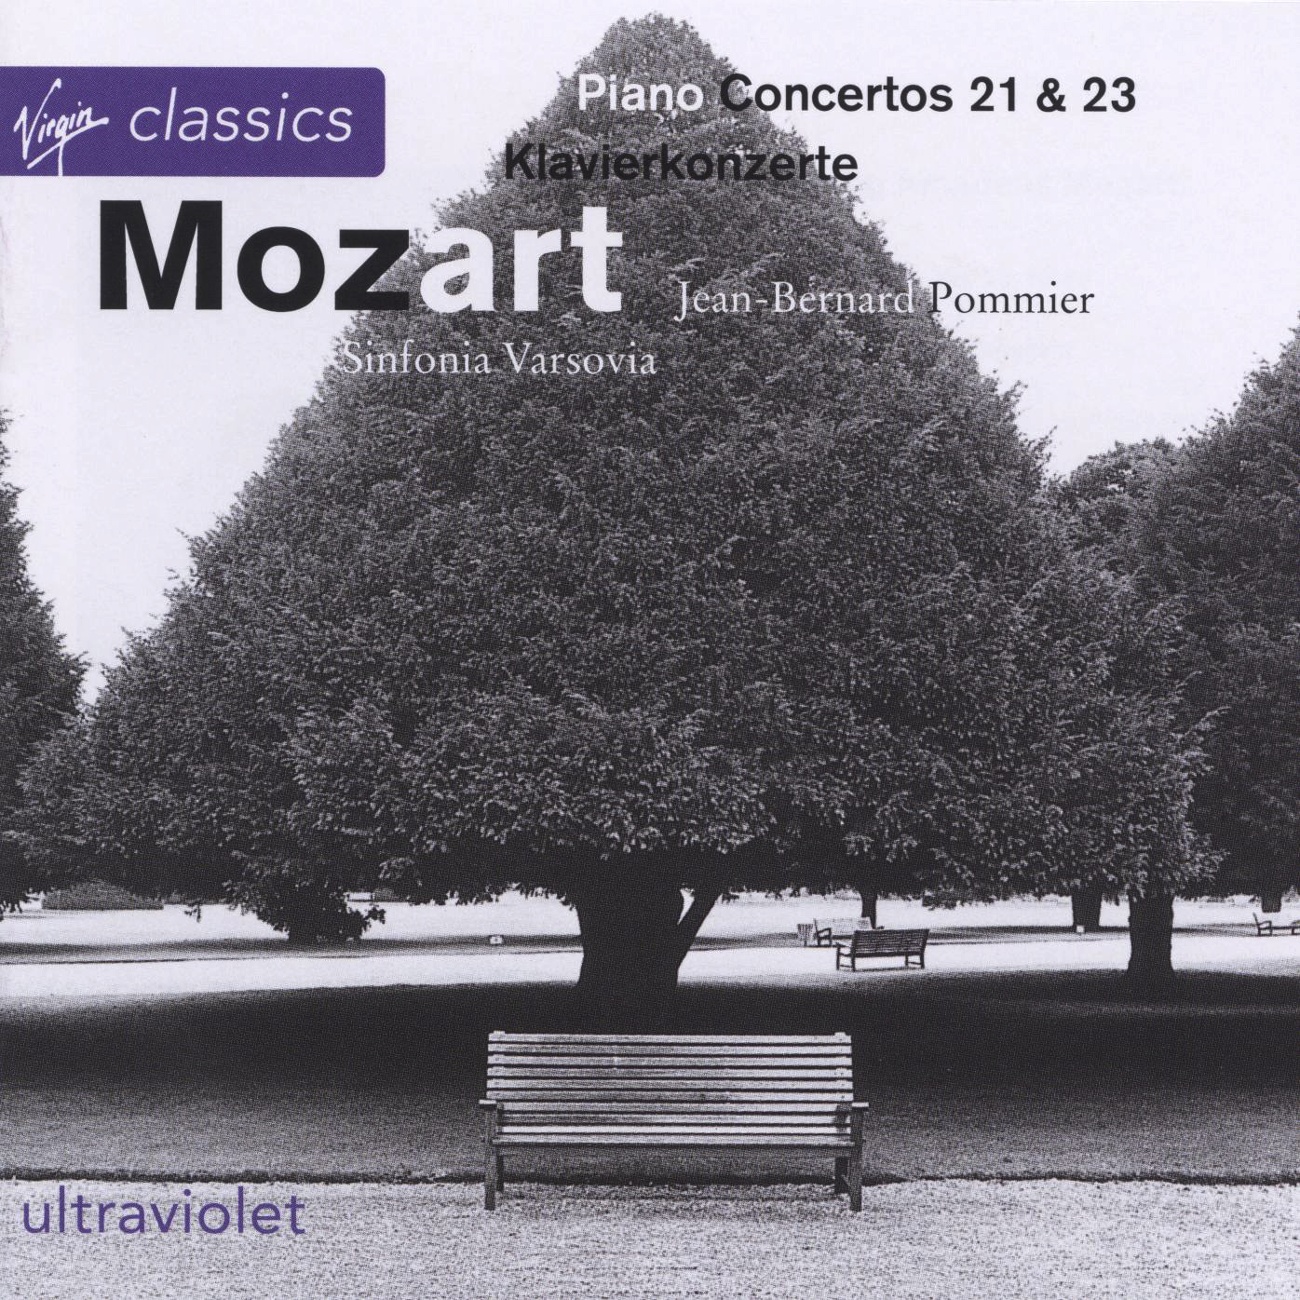 Piano Concerto No. 21 in C major K467.: I.       Allegro maestoso